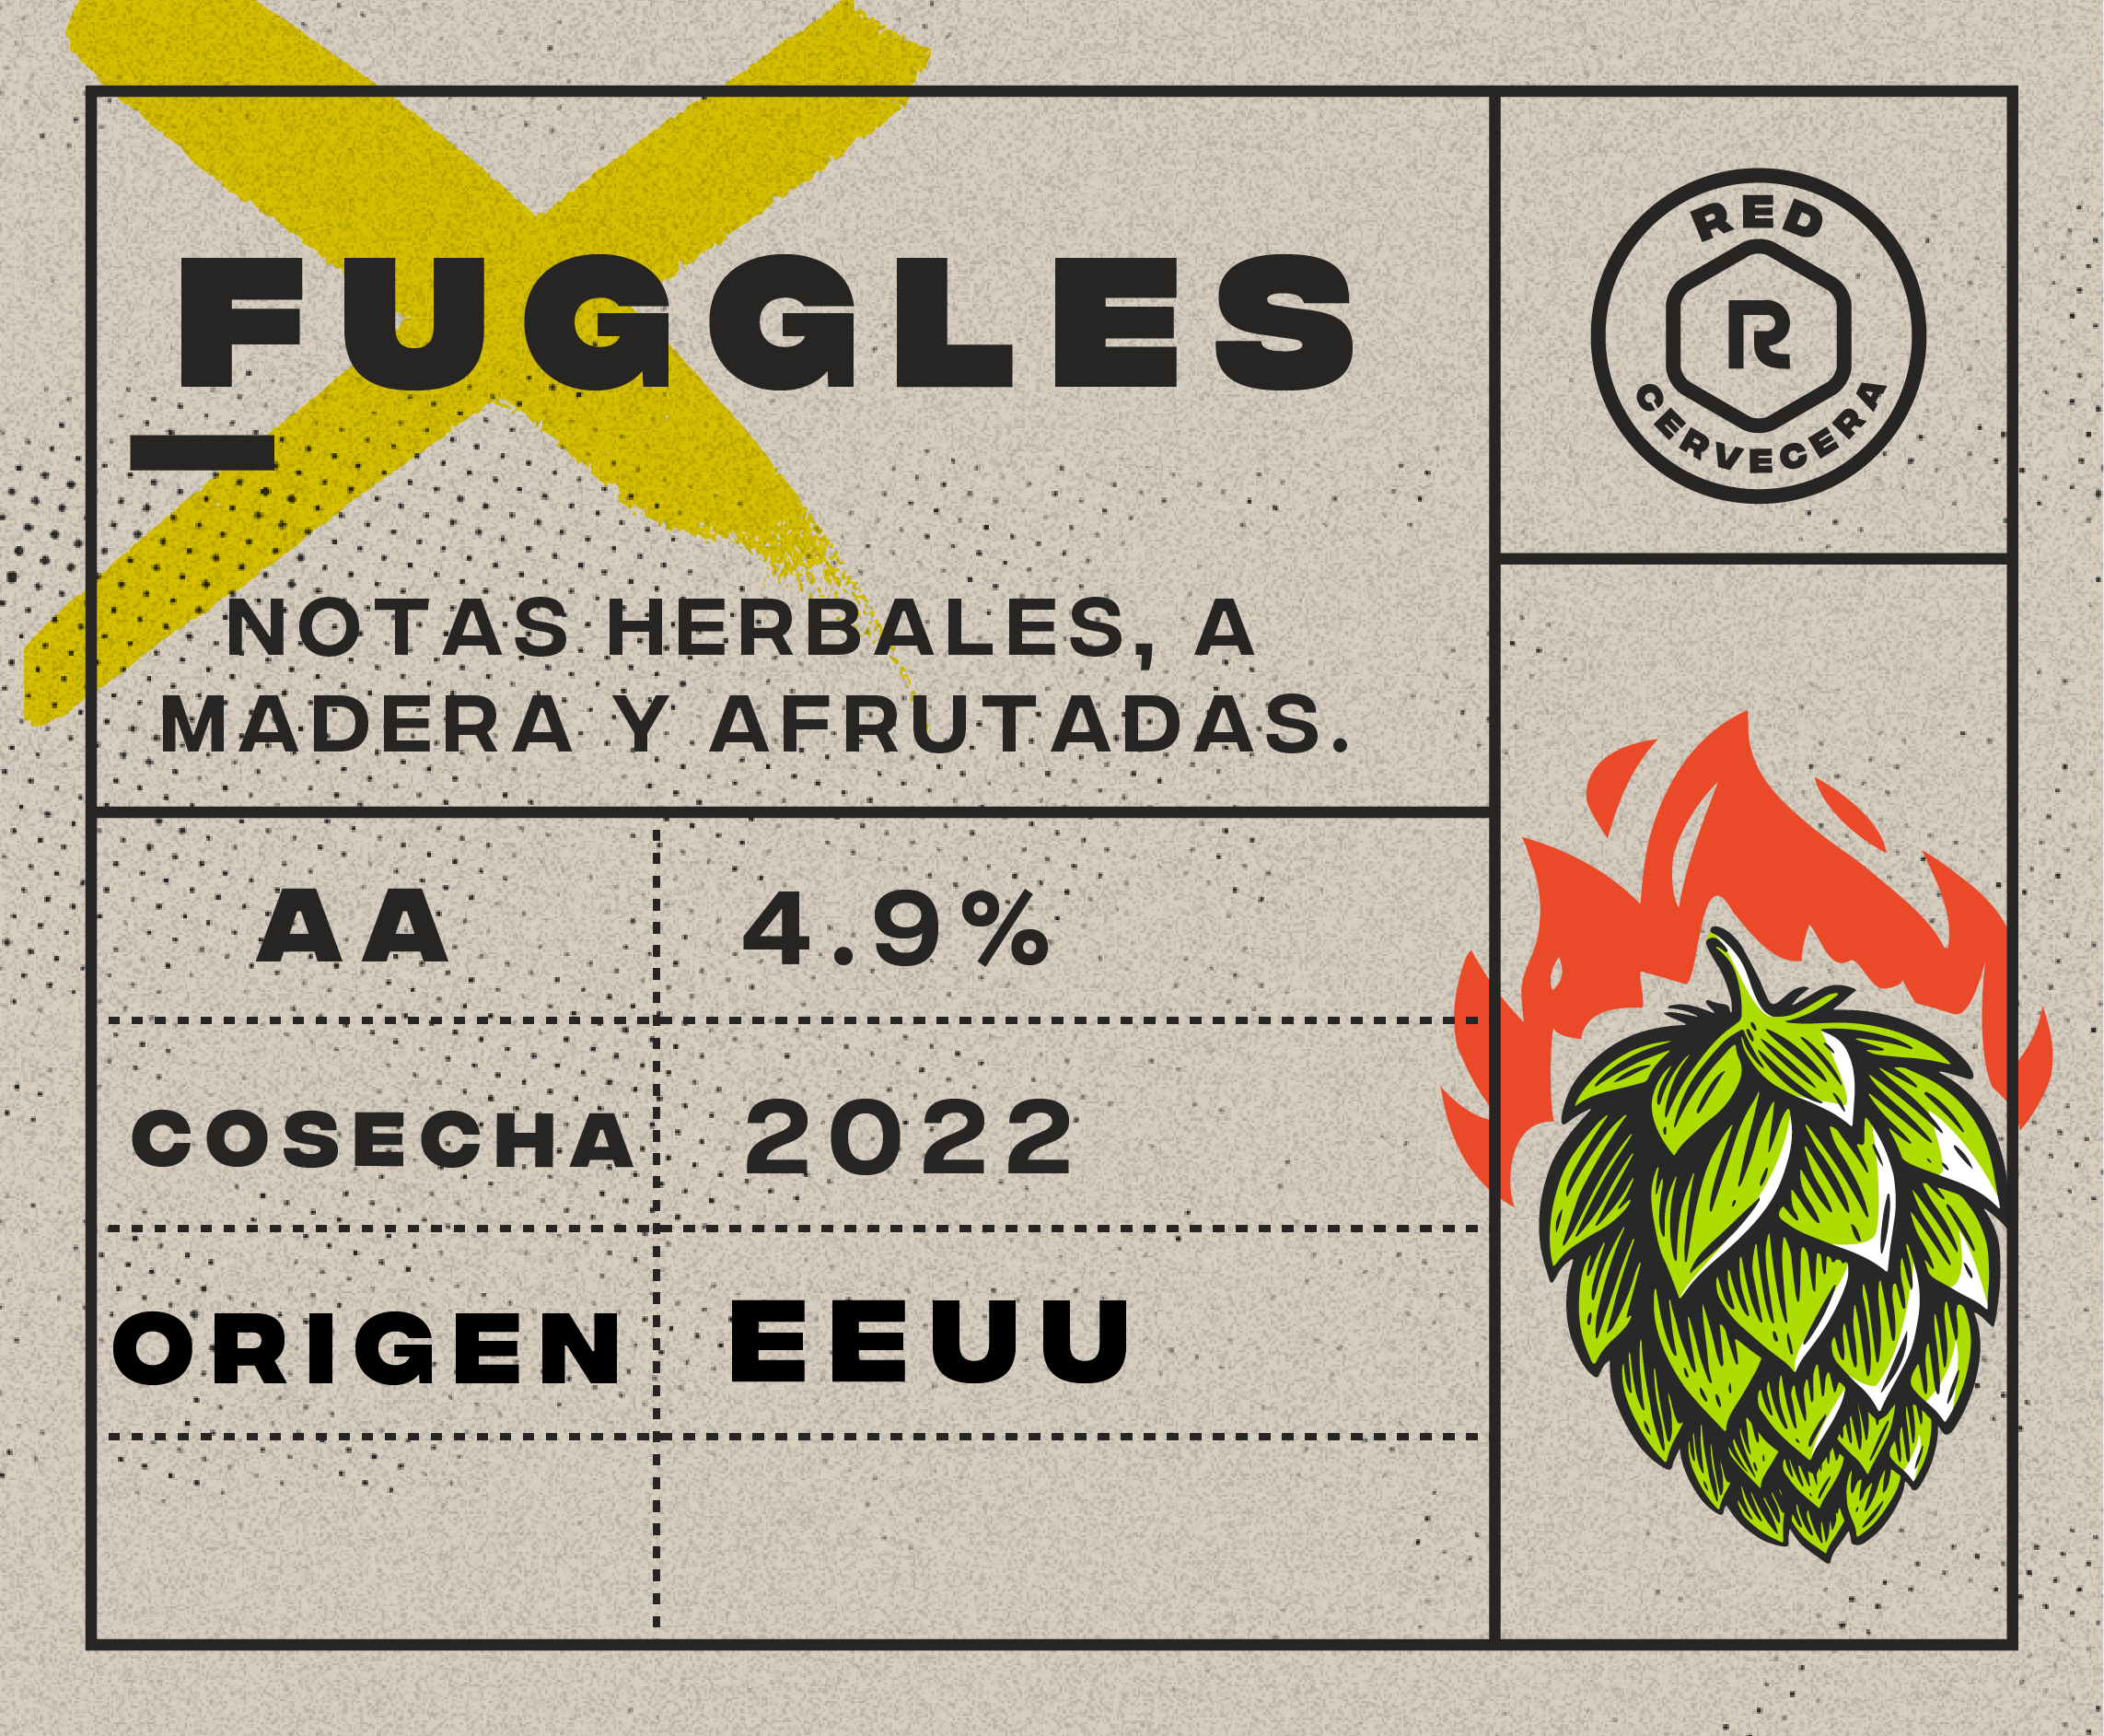 Fuggles 4.9%AA (1g.)